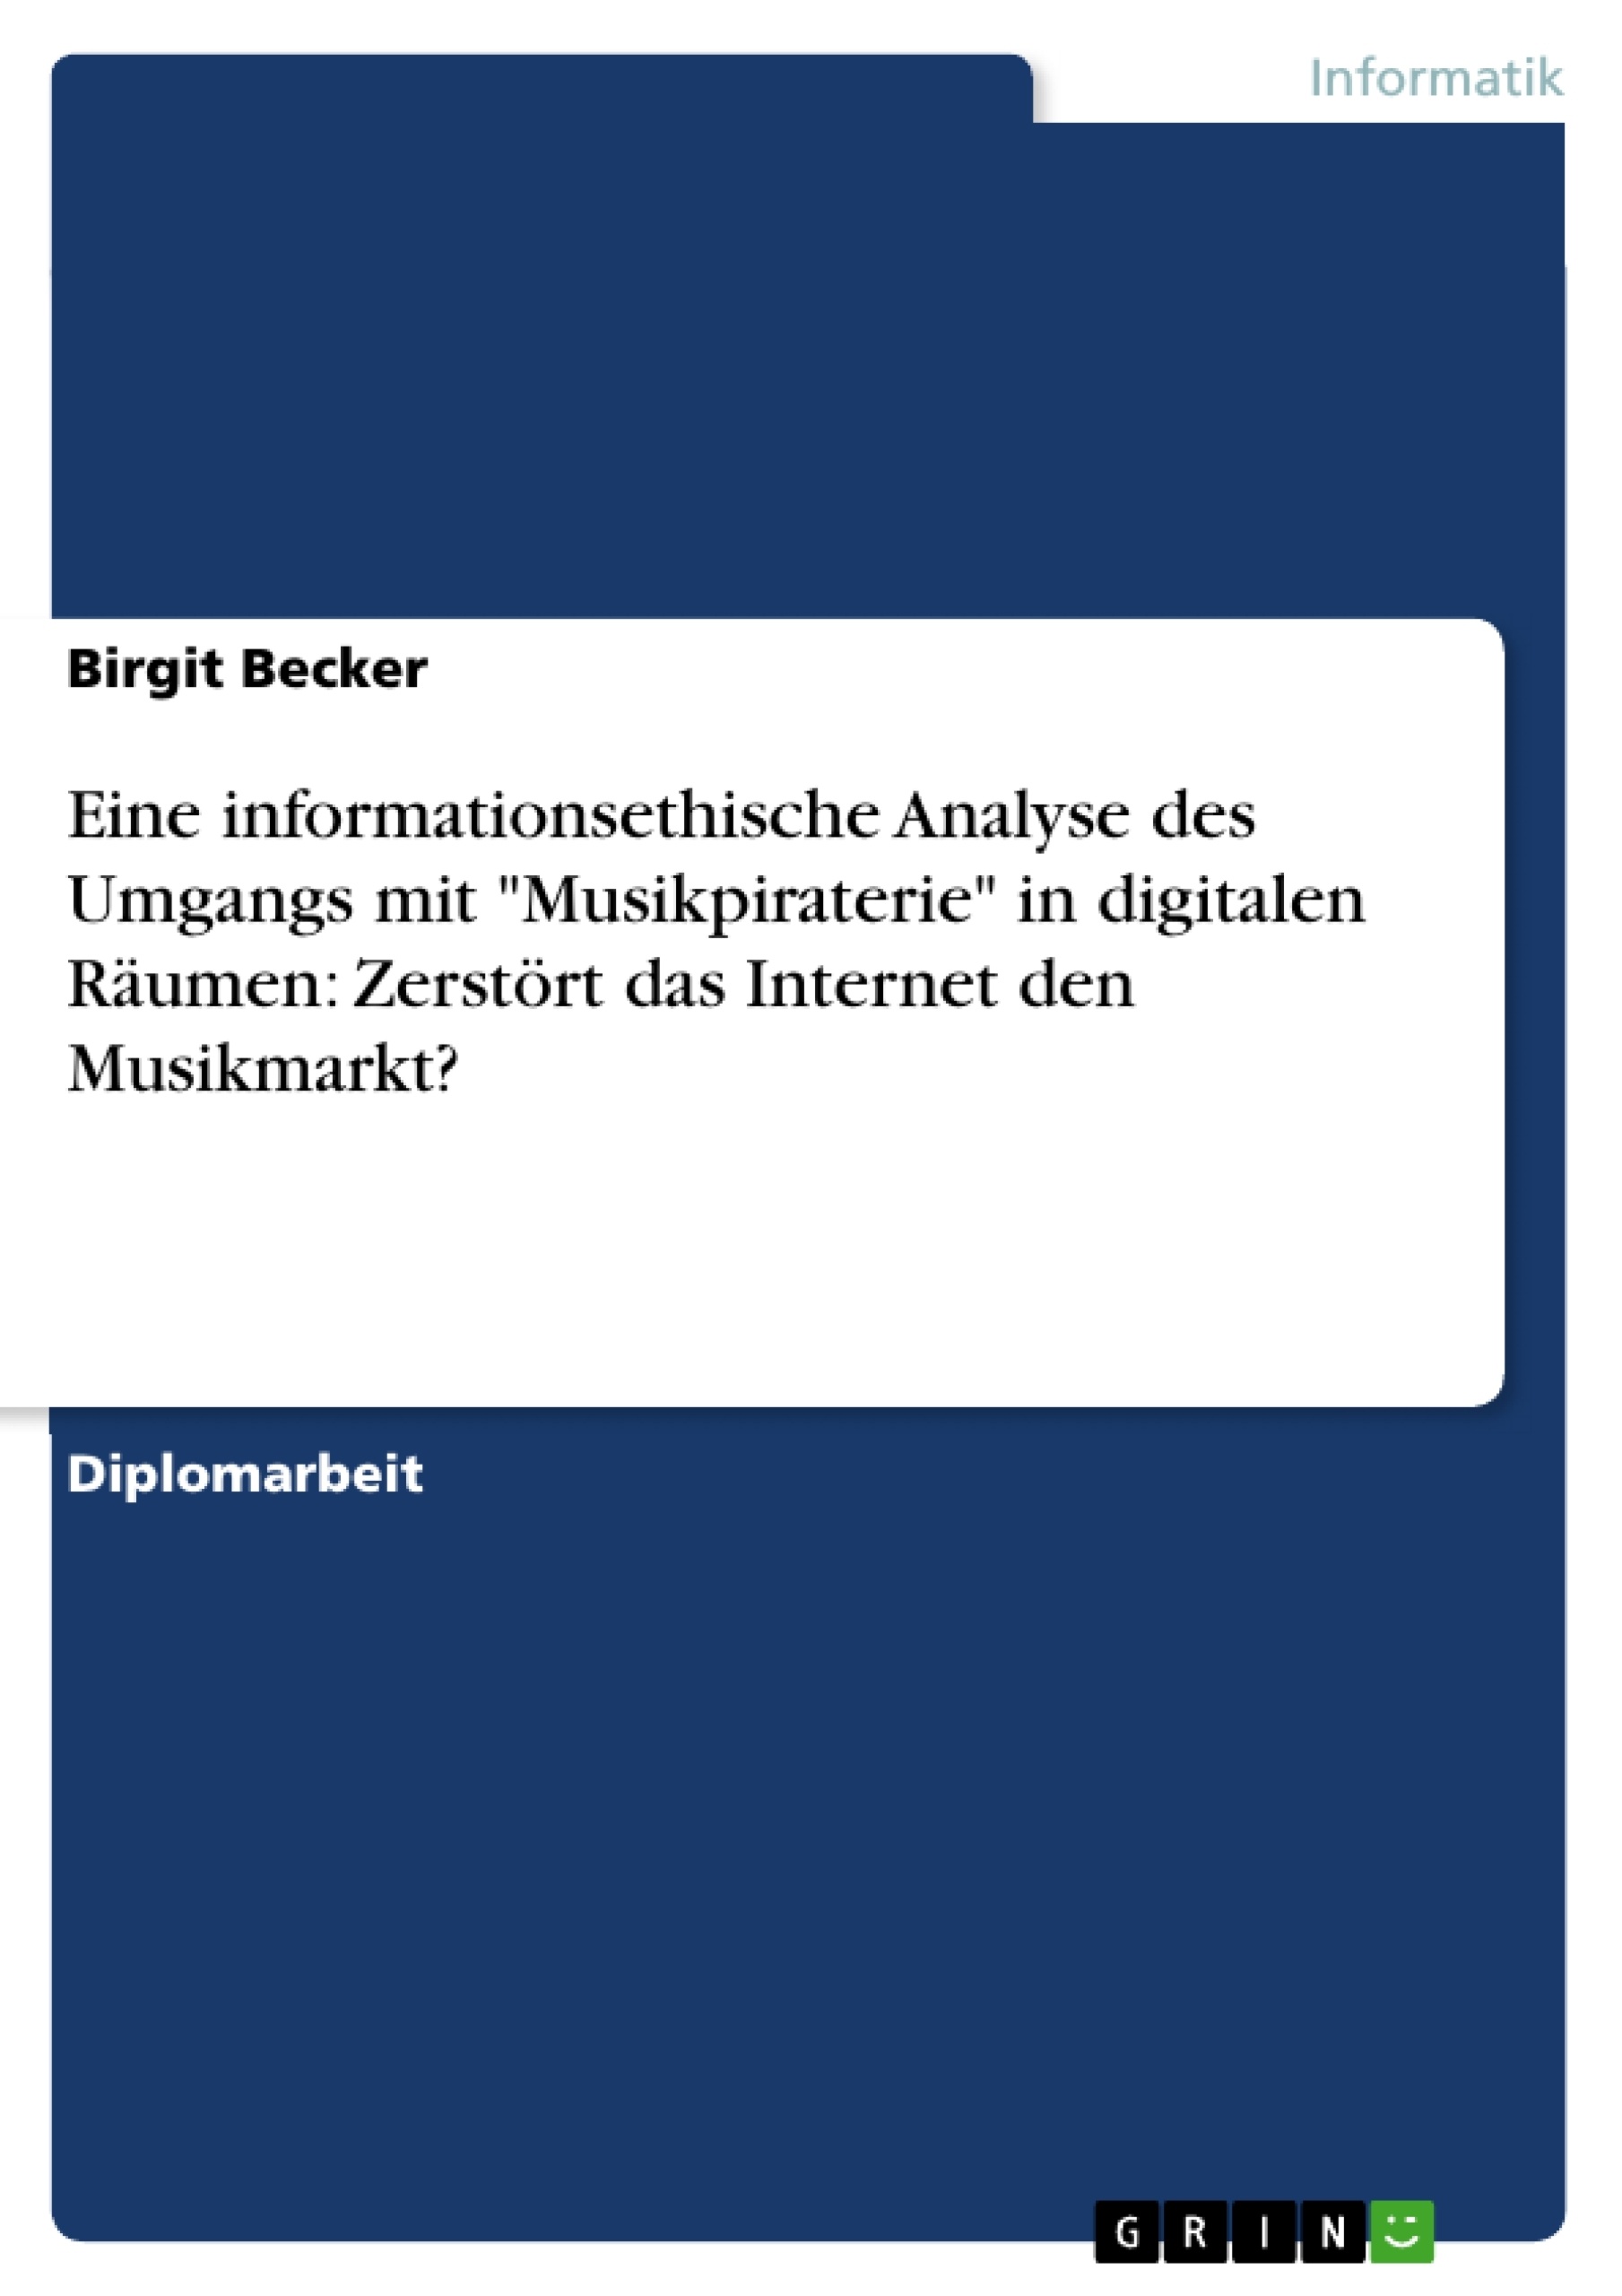 Título: Eine informationsethische Analyse des Umgangs mit "Musikpiraterie" in digitalen Räumen: Zerstört das Internet den Musikmarkt?